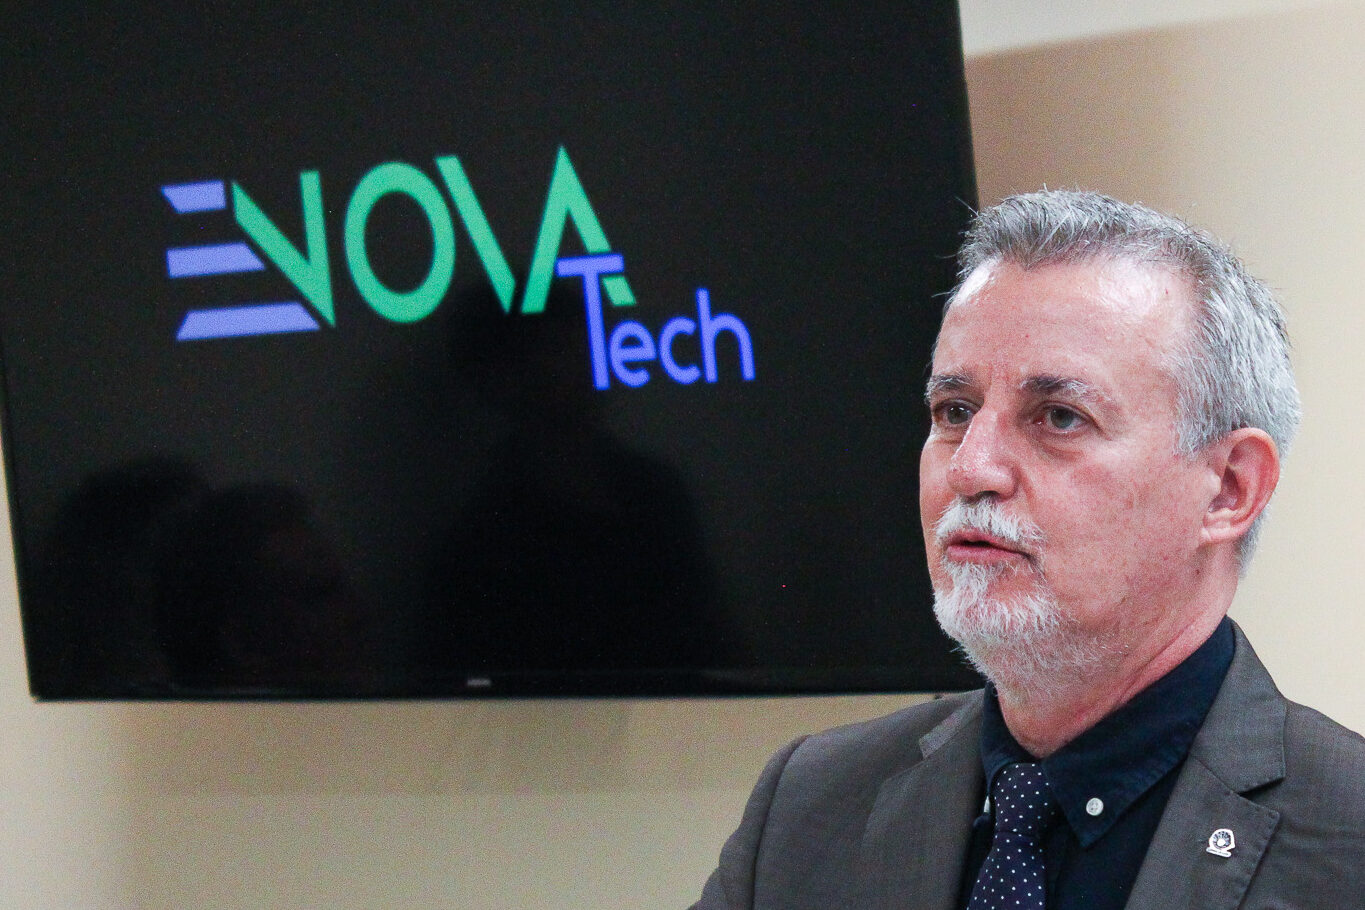 Lançamento eNOVATech, a Educorp avança no uso da tecnologia virtual